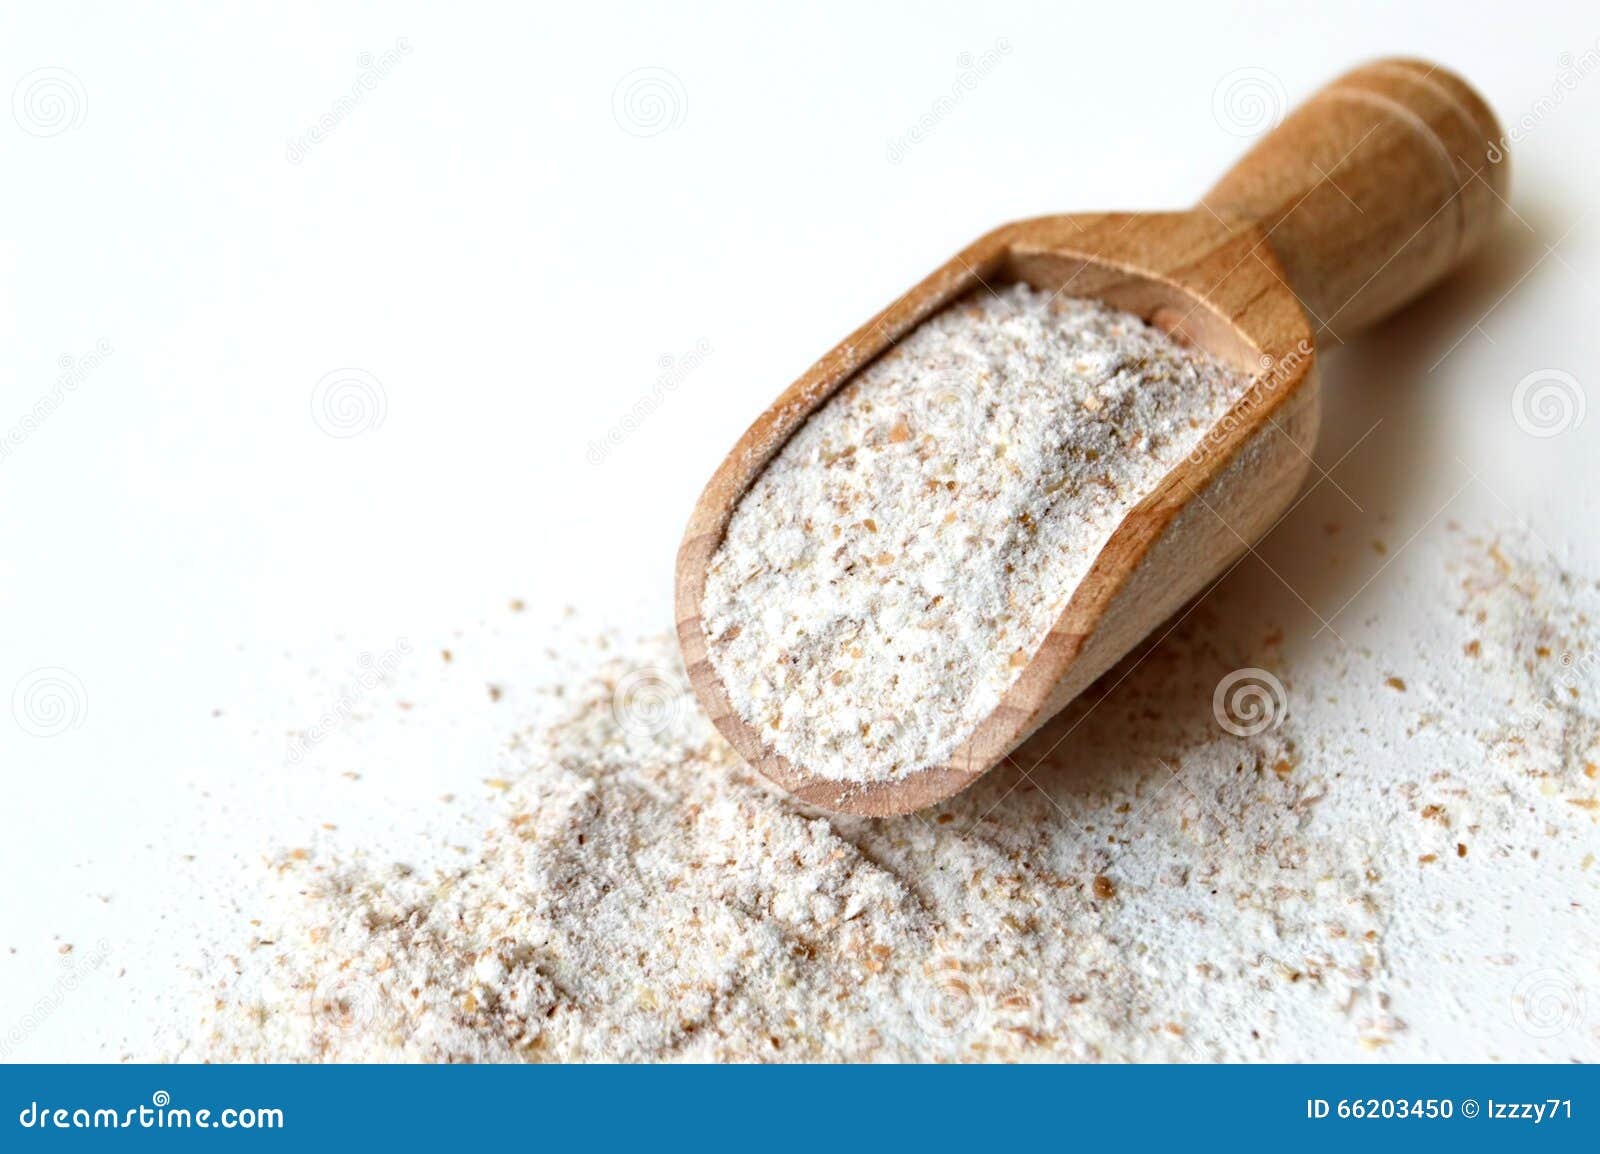 rye flour in wooden scoop